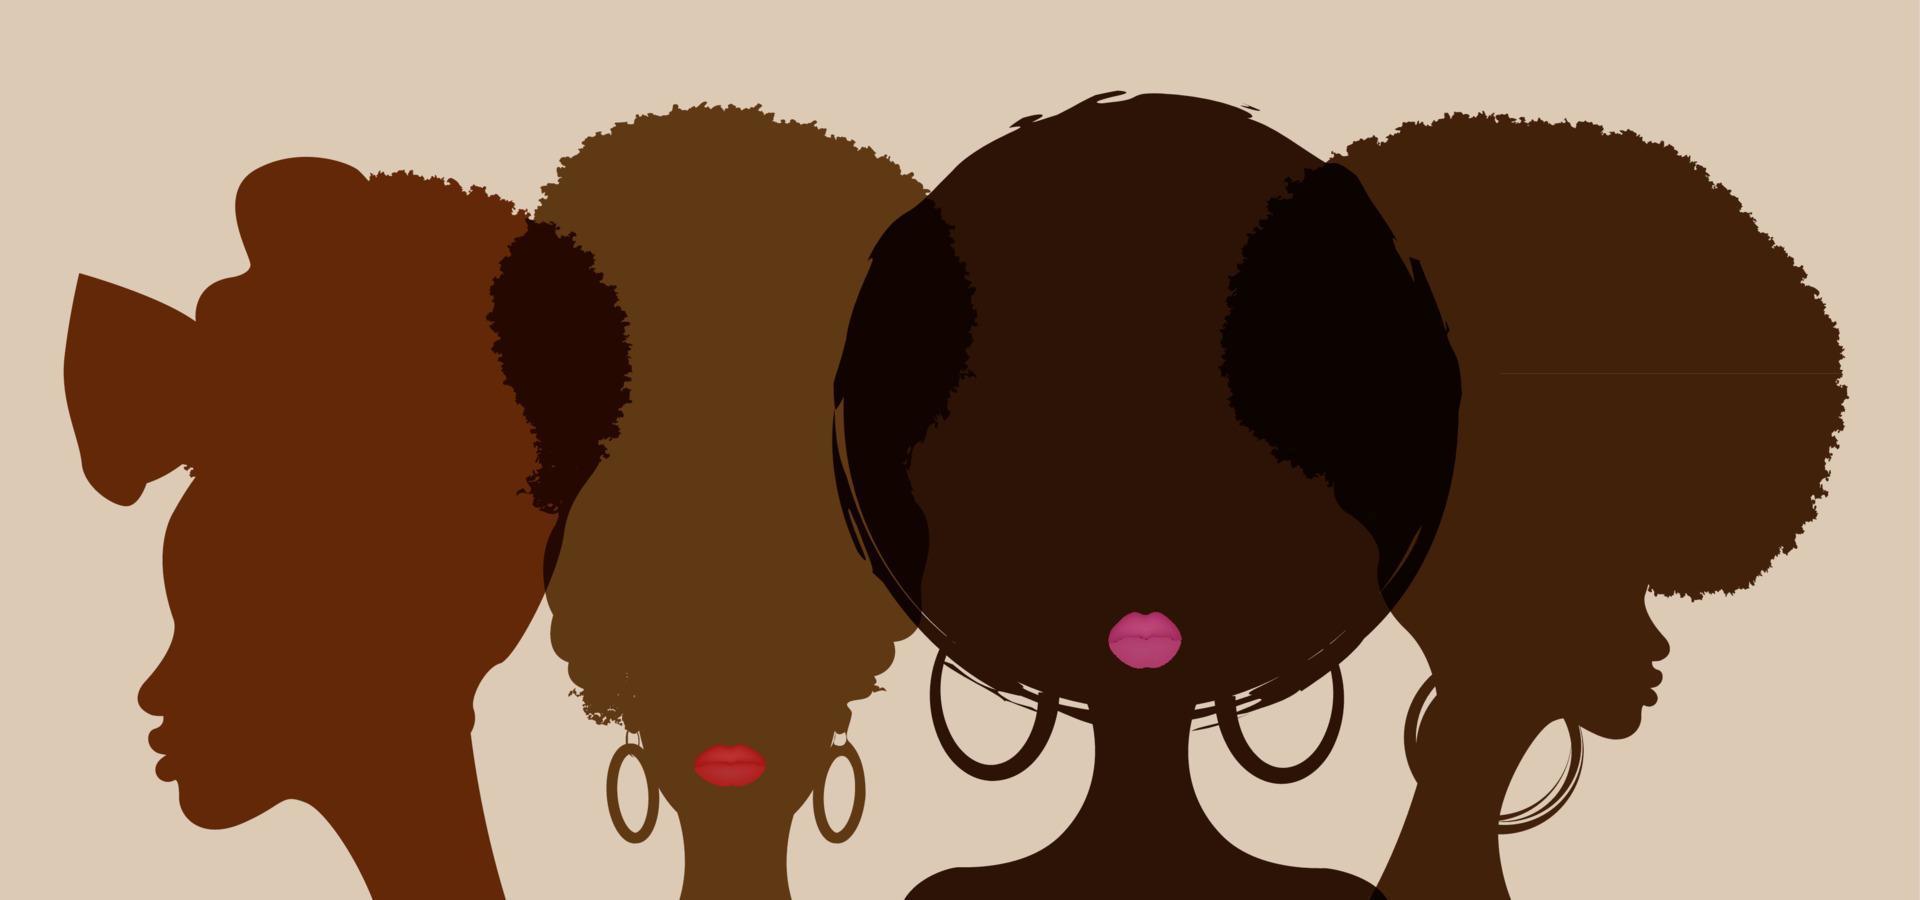 comemorando a bandeira do mês da história negra. as mulheres africanas do retrato estão juntas lado a lado. história afro-americana ou mês da história negra. comemorado anualmente em fevereiro nos eua e canadá vetor